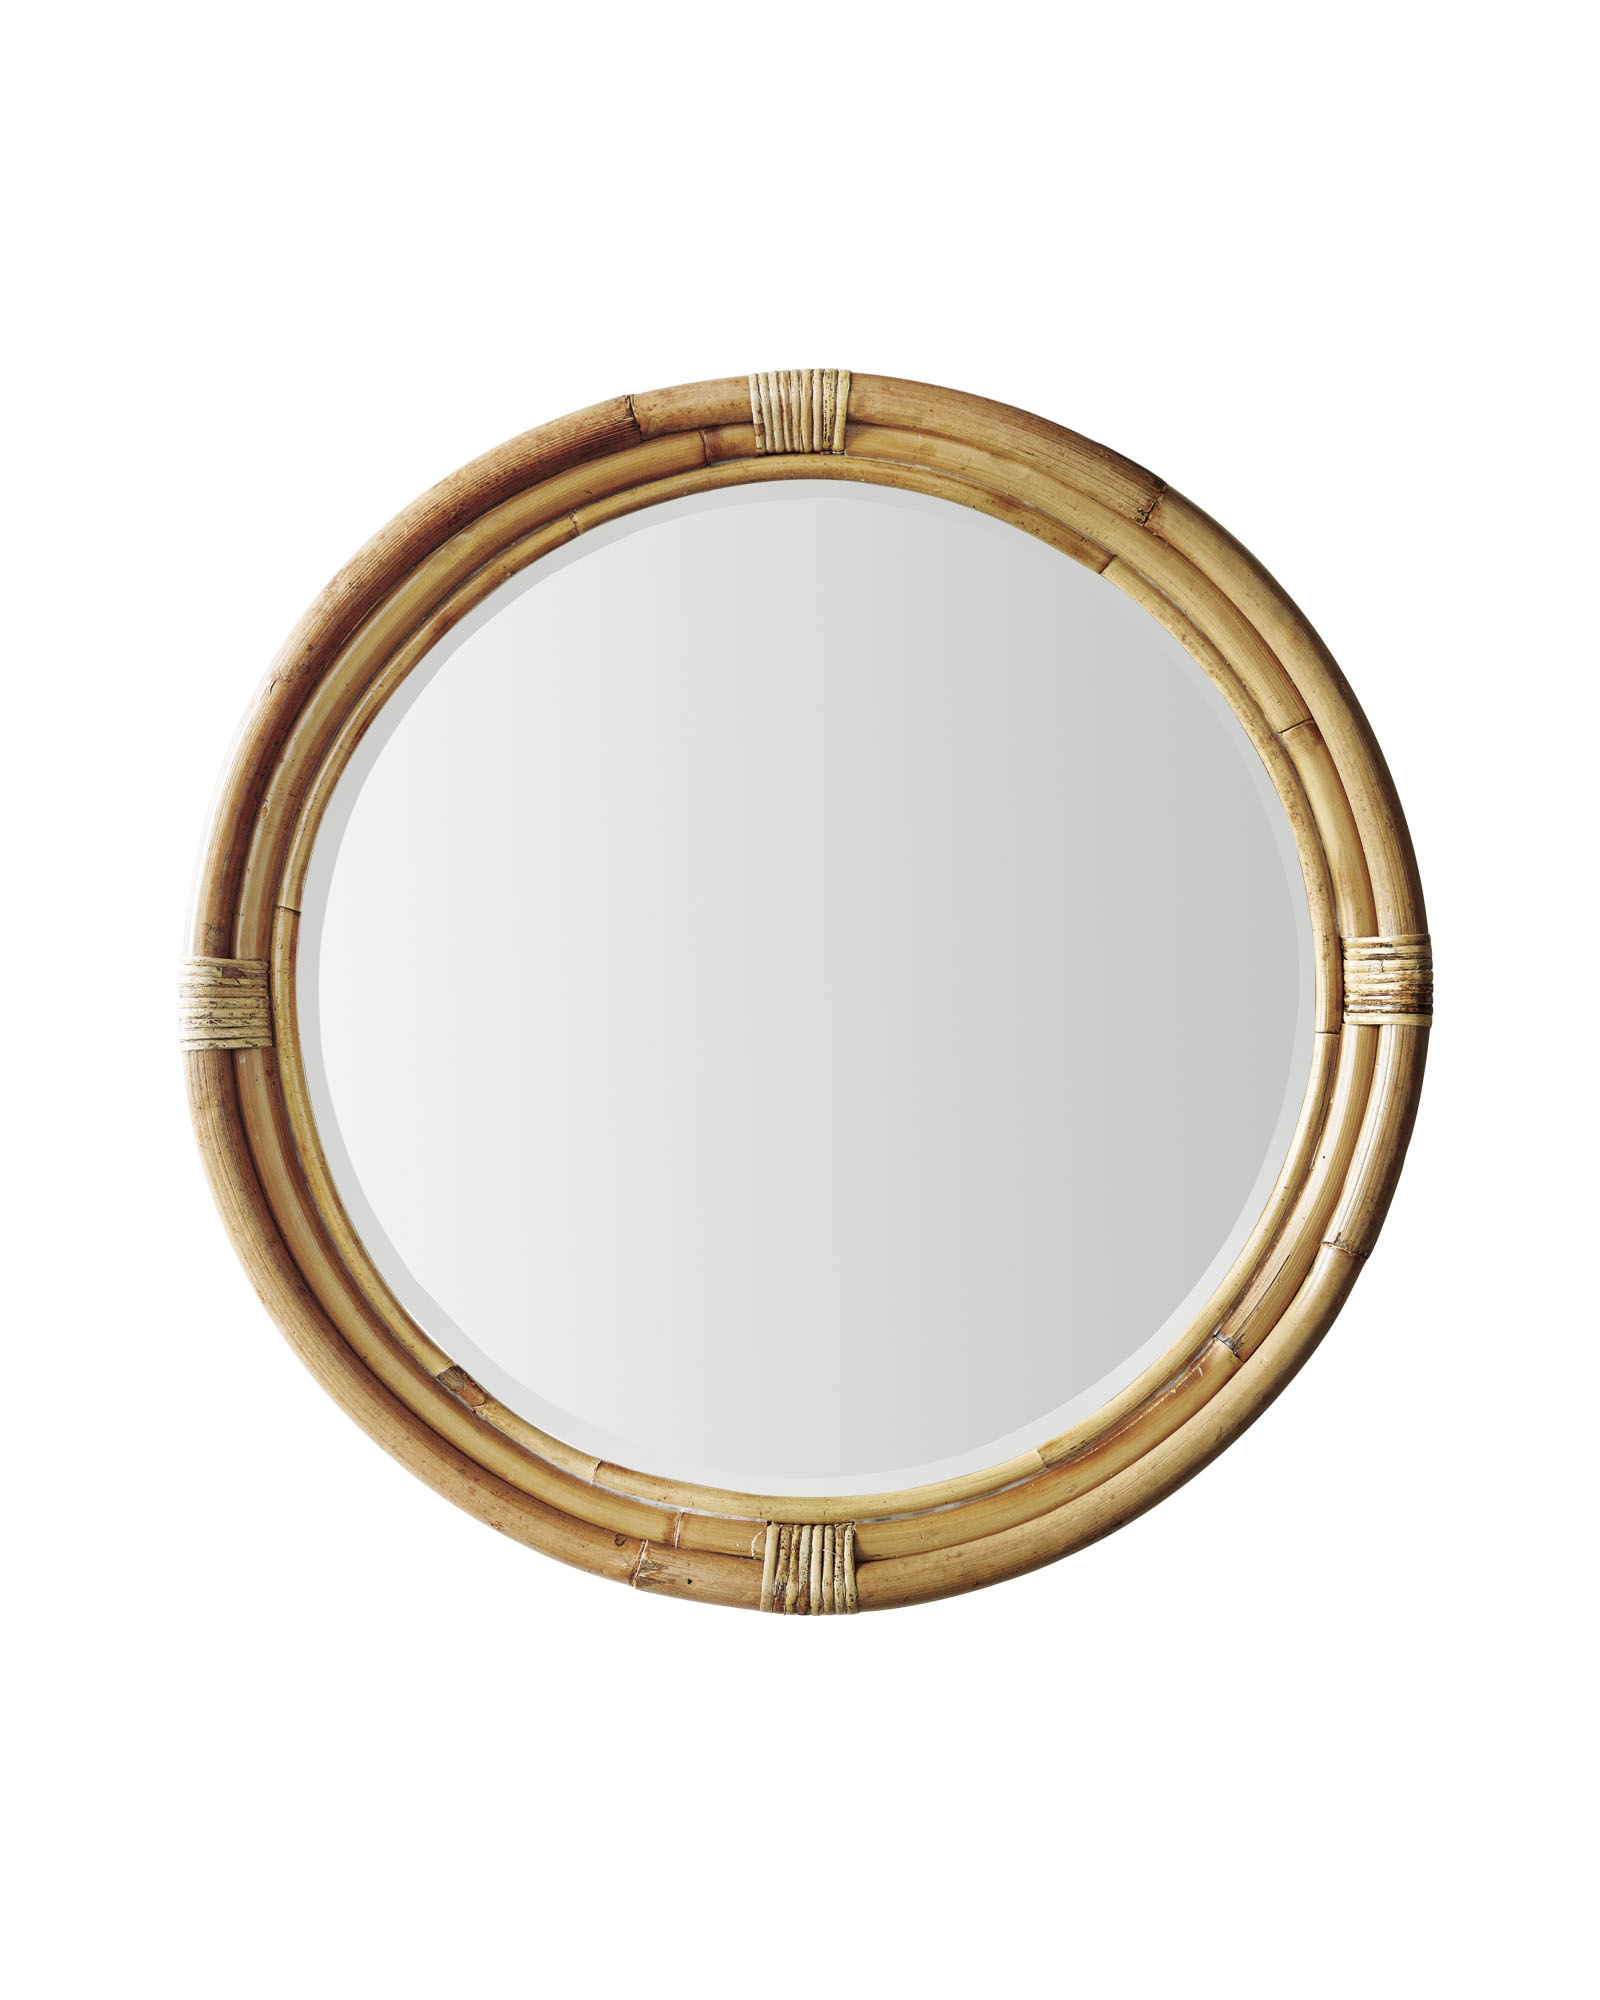 Montara Mirror - Large - Natural - Image 0